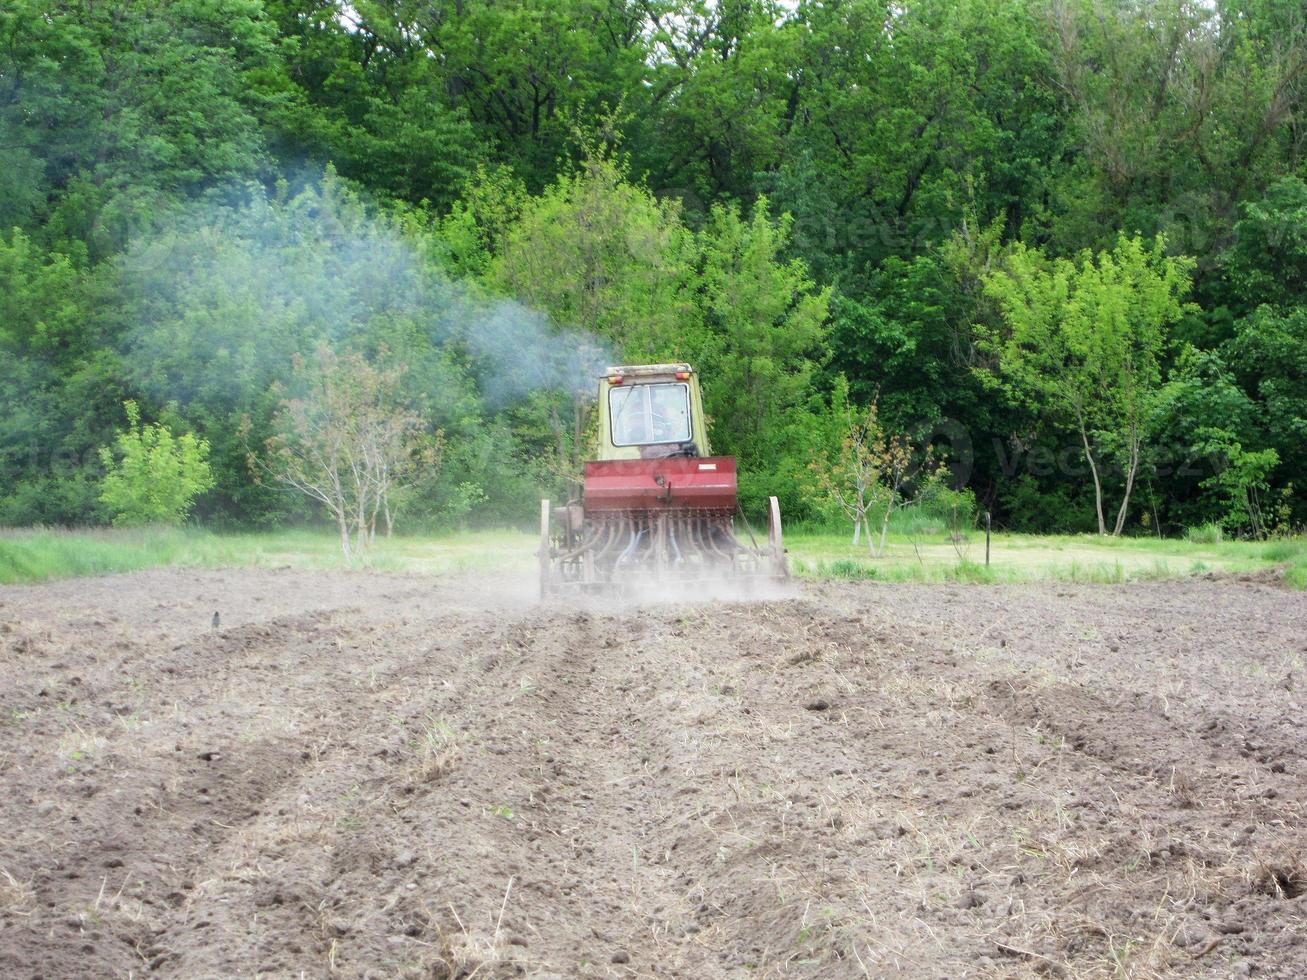 plöjd åker med traktor i brun jord på öppen natur foto